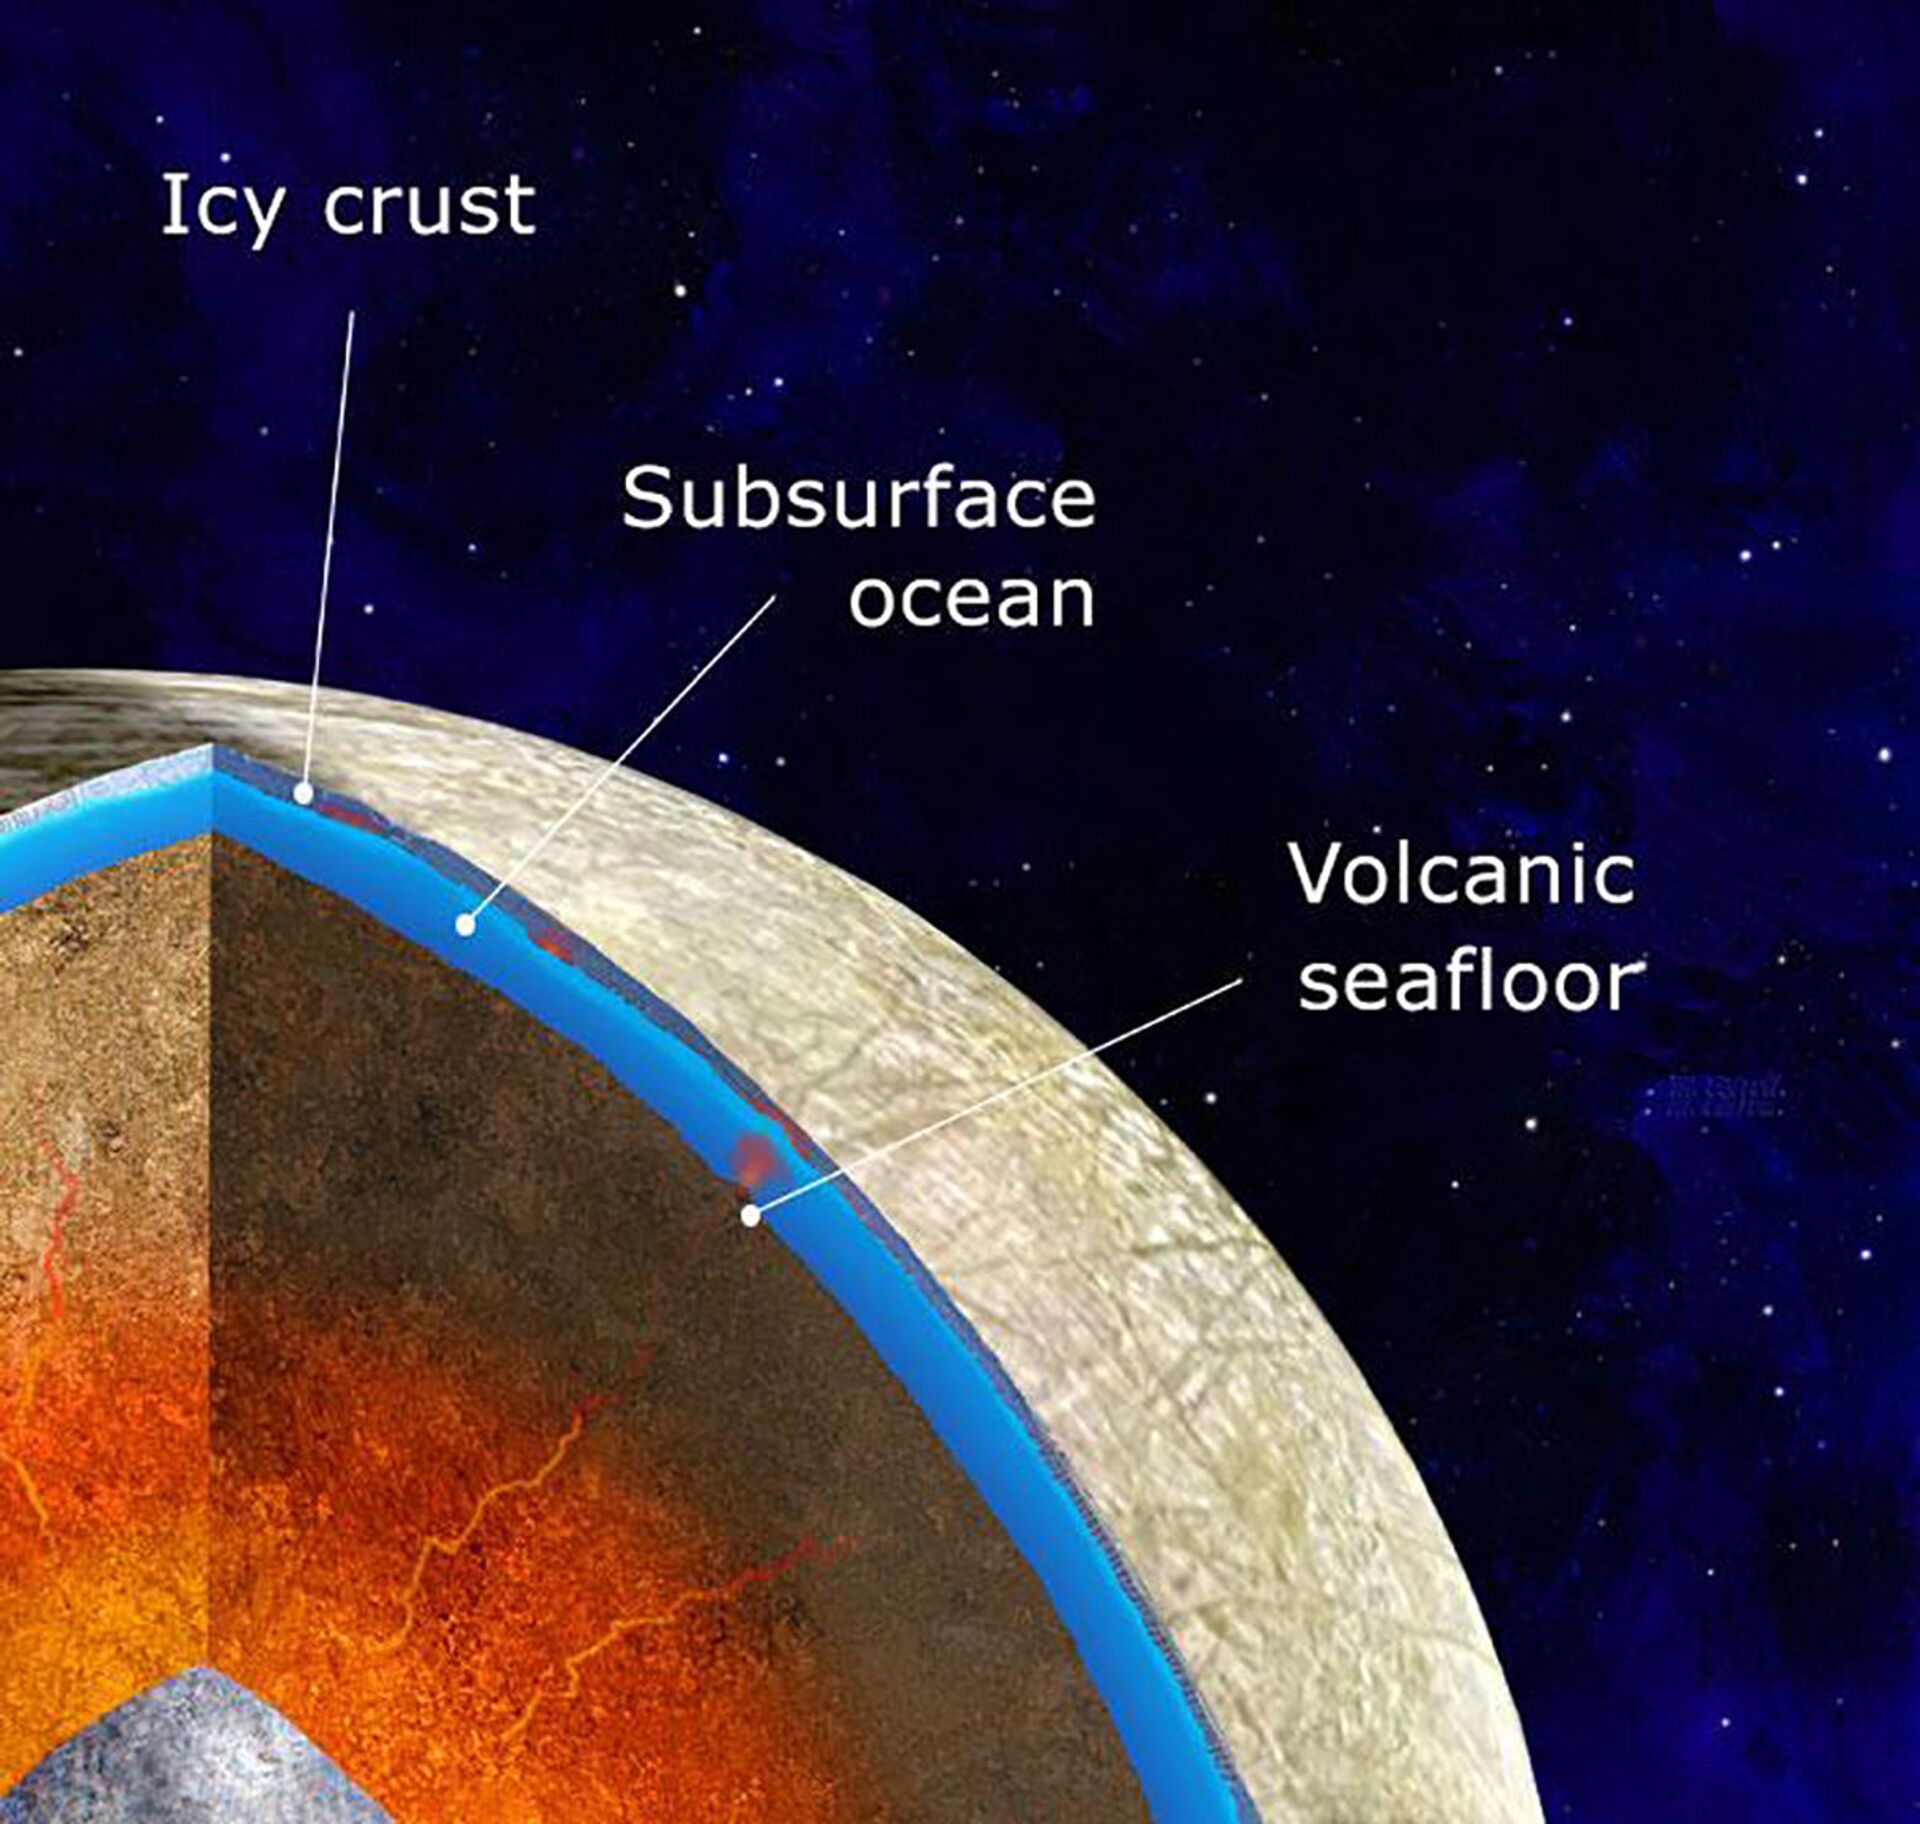 Lua de Júpiter pode abrigar vulcões ativos escondidos sob vasta camada de gelo, aponta estudo - Sputnik Brasil, 1920, 28.05.2021